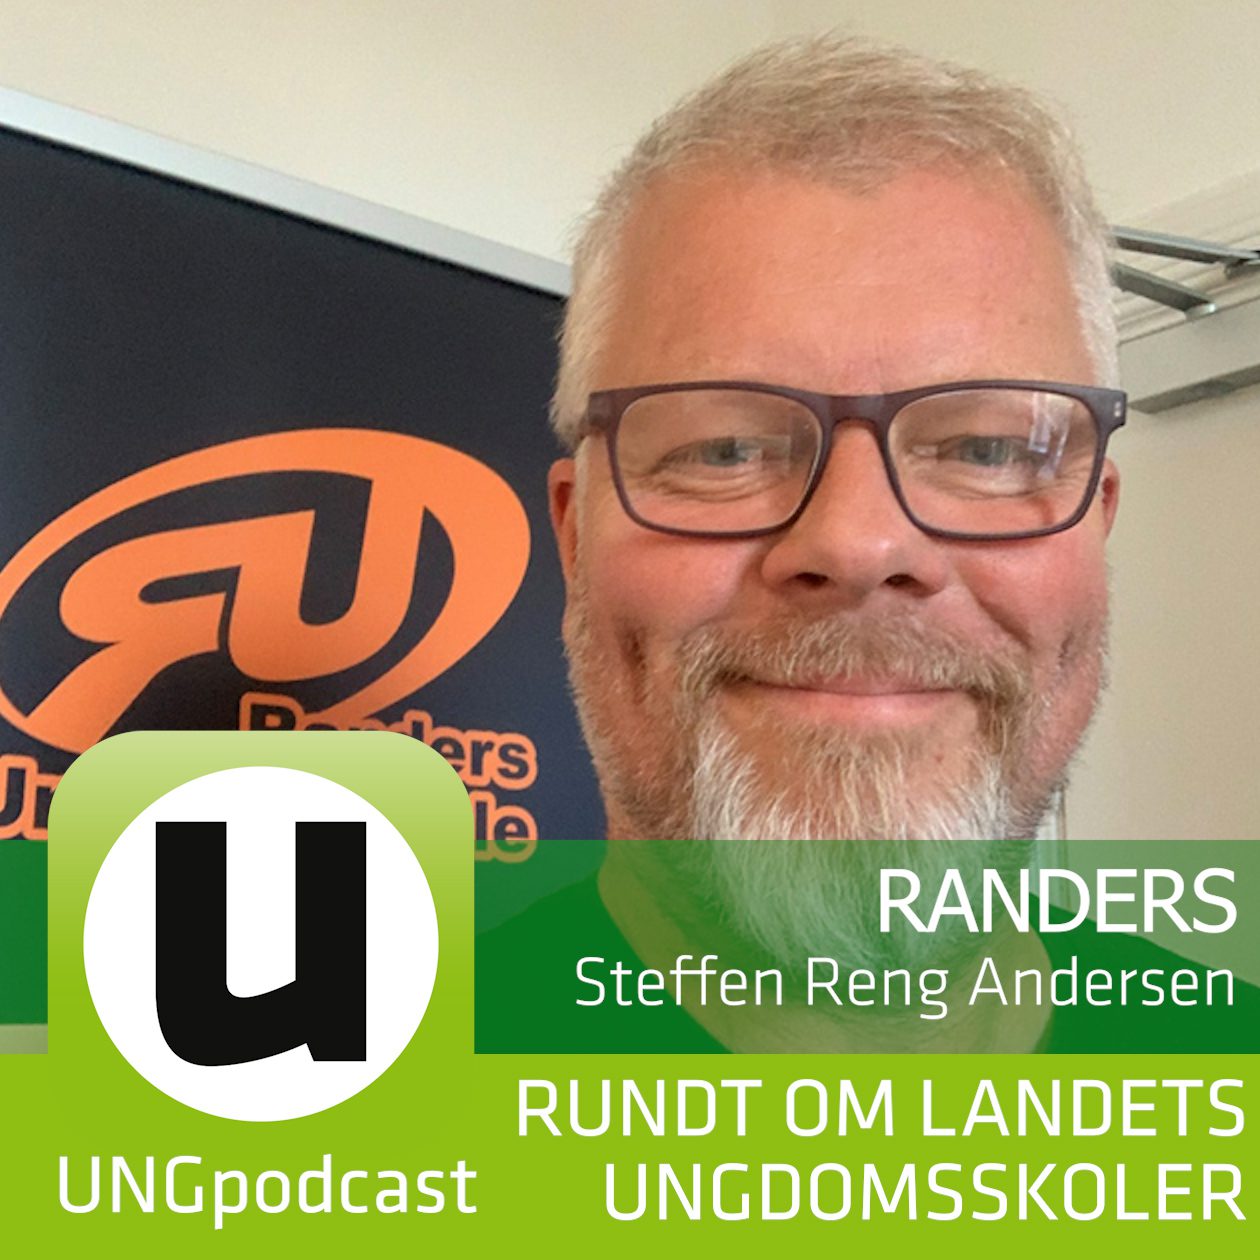 Podcast #20 Randers Steffen Reng Andersen